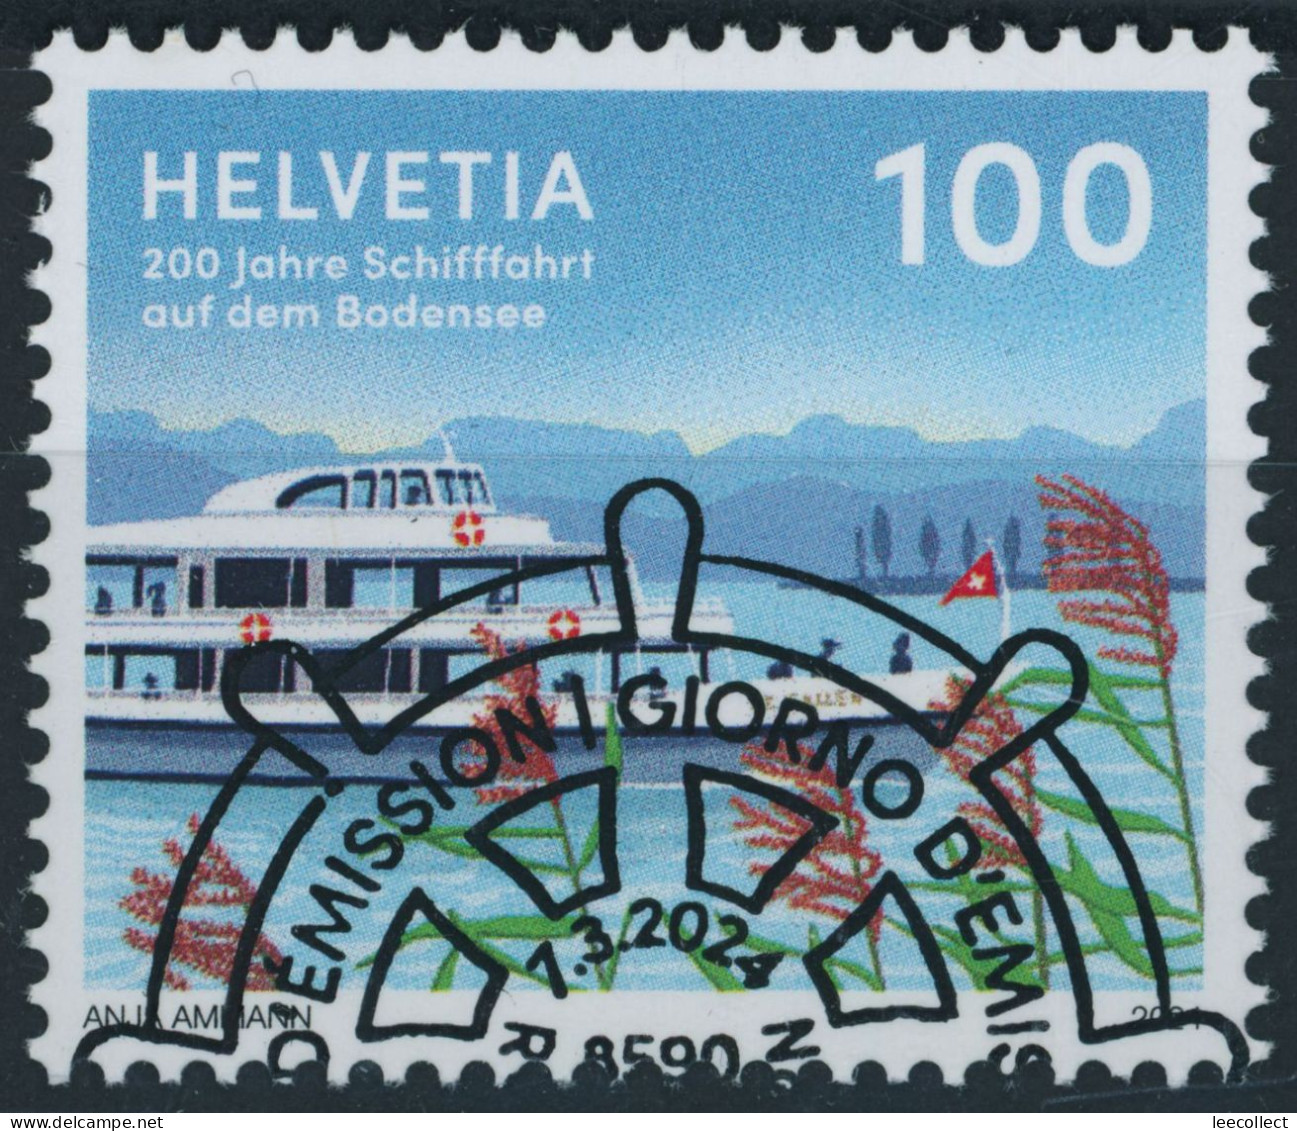 Suisse - 2024 - Schifffahrt Bodensee - Ersttag Stempel ET - Used Stamps